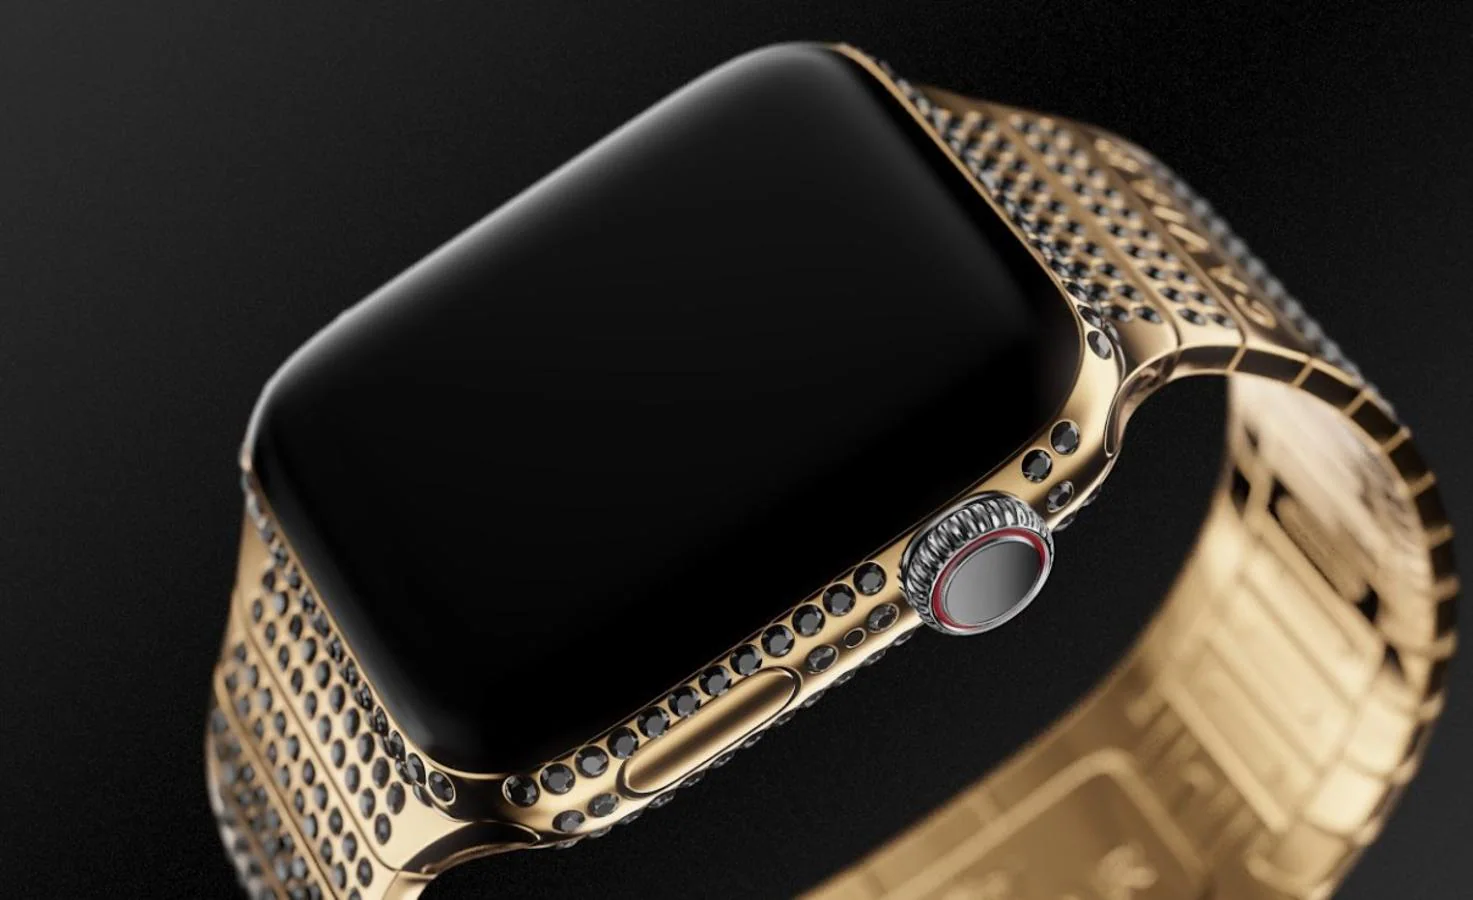 Apple Watch. Uno de ellos es el smartwatch de Apple, que estará hecho en oro y llevará incrustadas 633 piedras preciosas